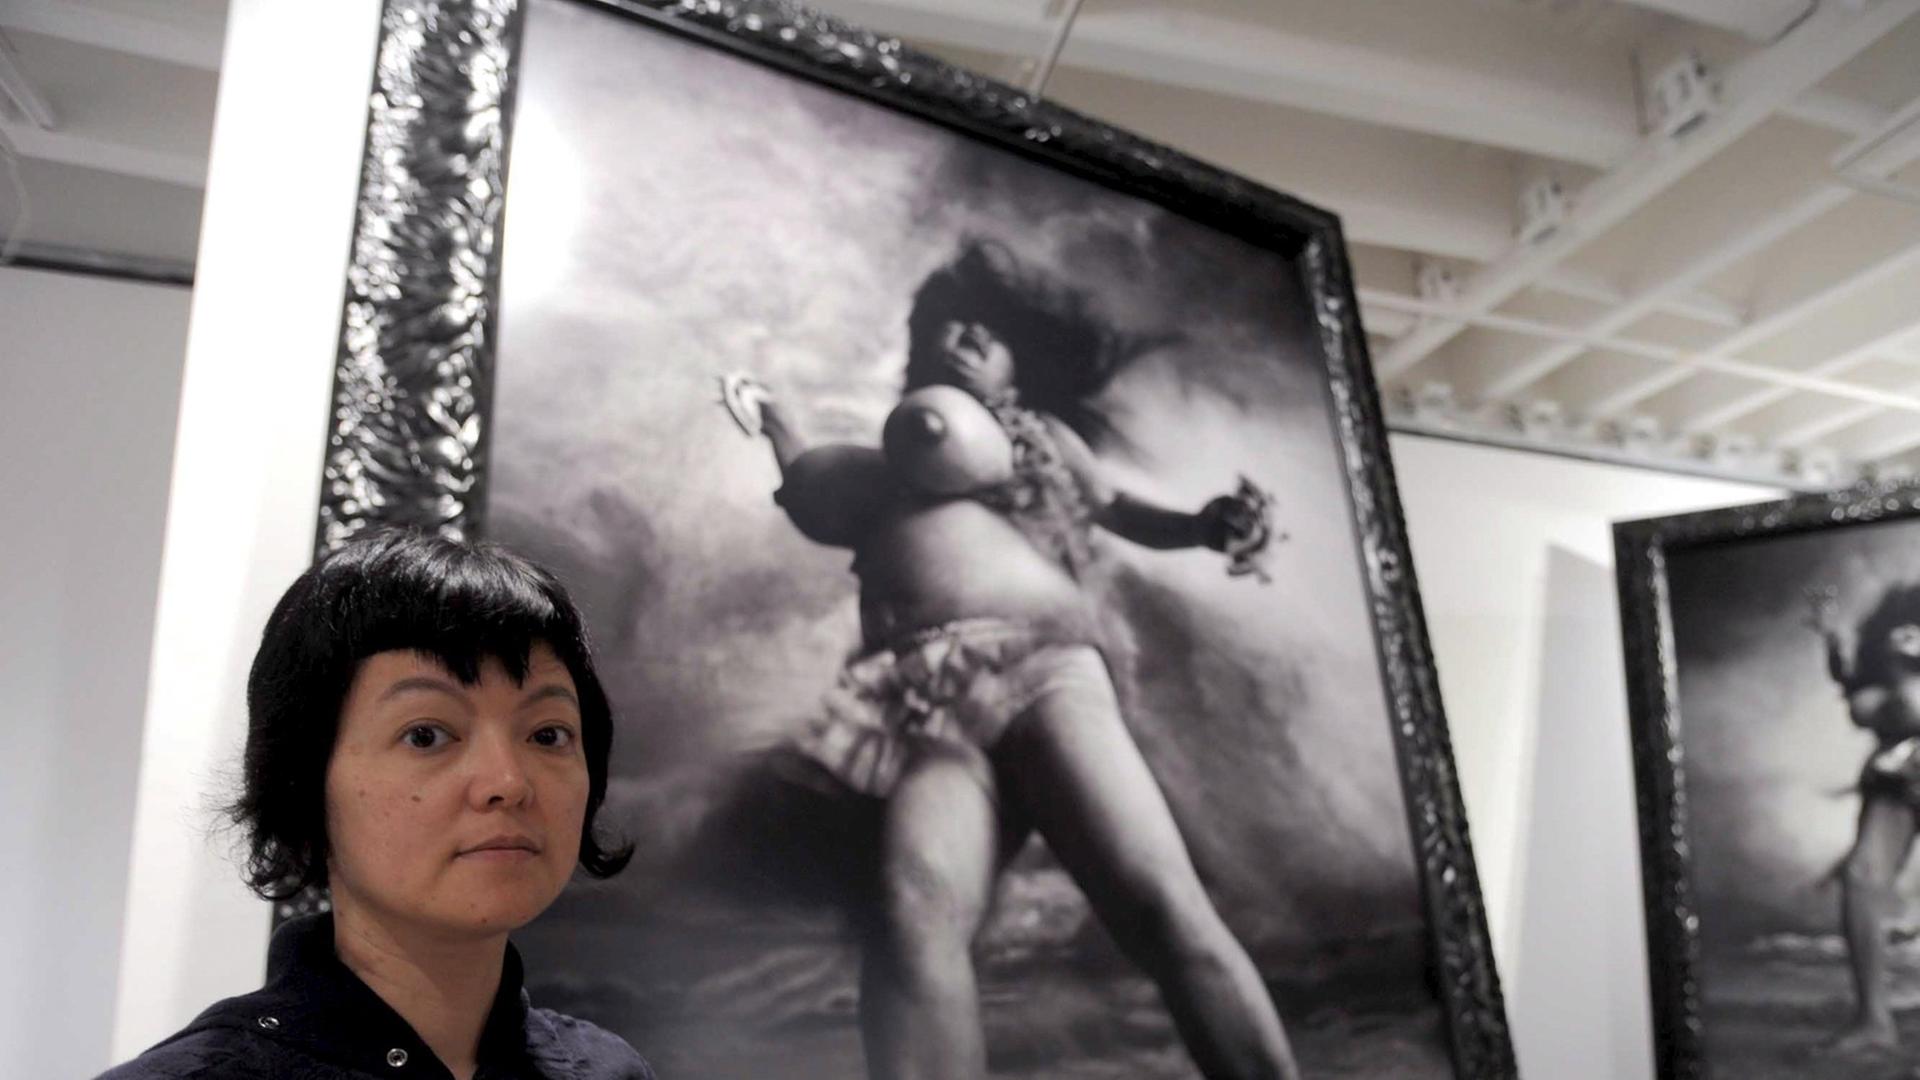 Die japanische Künstlerin Miwa Yanagi neben ihrem Kunstwerk "Windgepeitschte Frau" im japanischen Pavillon der 53. Biennale Venedig 2009.